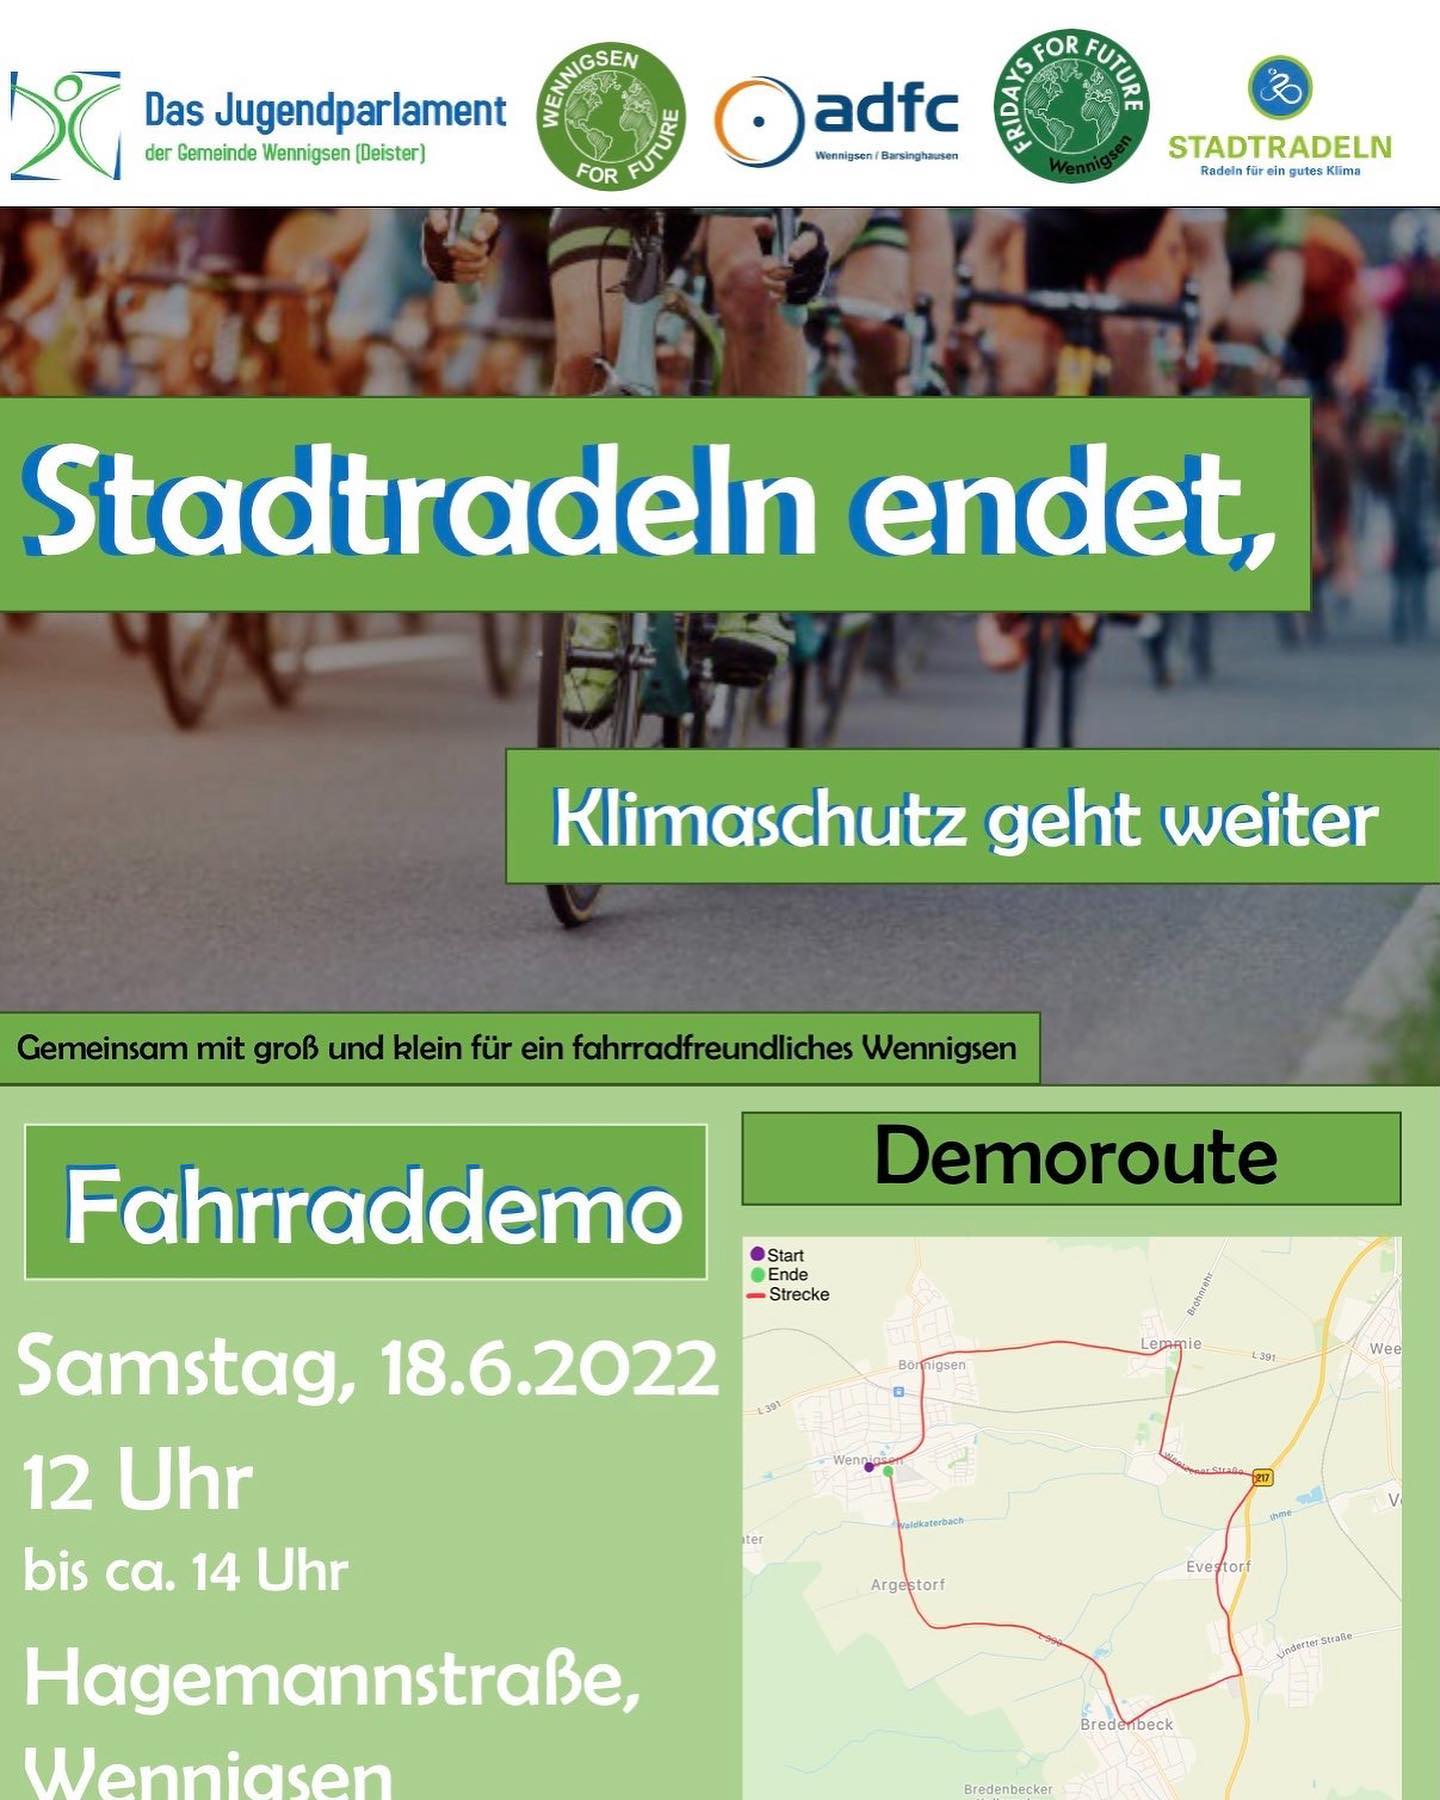 Diesen Samstag endet das Stadtradeln und das Jugendparlament und Fridays for Future Wennigsen planen gemeinsam mit Wennigsen for Future und dem adfc Wennigsen eine große Fahrradtour durch die Dörfer von Wennigsen.

Wir freuen uns, wenn ihr dabei seid, und sind selbst auch mit dabei!

Die Fahrraddemo startet am 18.06.2022 um 12 Uhr am Hagemannplatz und endet gegen 14 Uhr an der Sonnenuhr.

#stadtradeIn #fahrradtour #fahrradfahren #demo #klimaschutz
#wirradelnfürsklima #poweredbyjugendpflegewennigsen